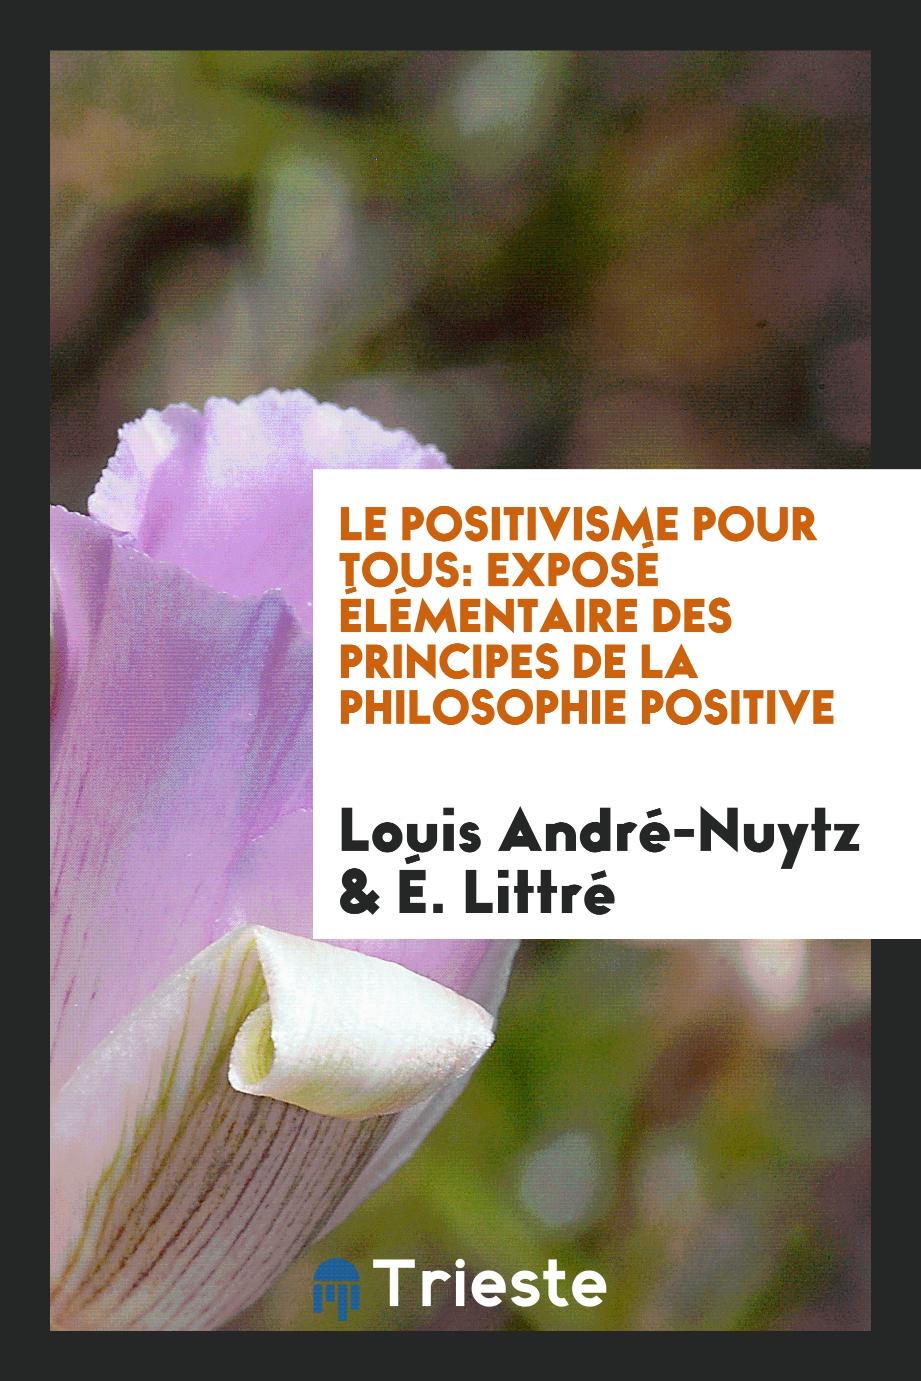 Le Positivisme Pour Tous: Exposé Élémentaire des Principes de la Philosophie Positive